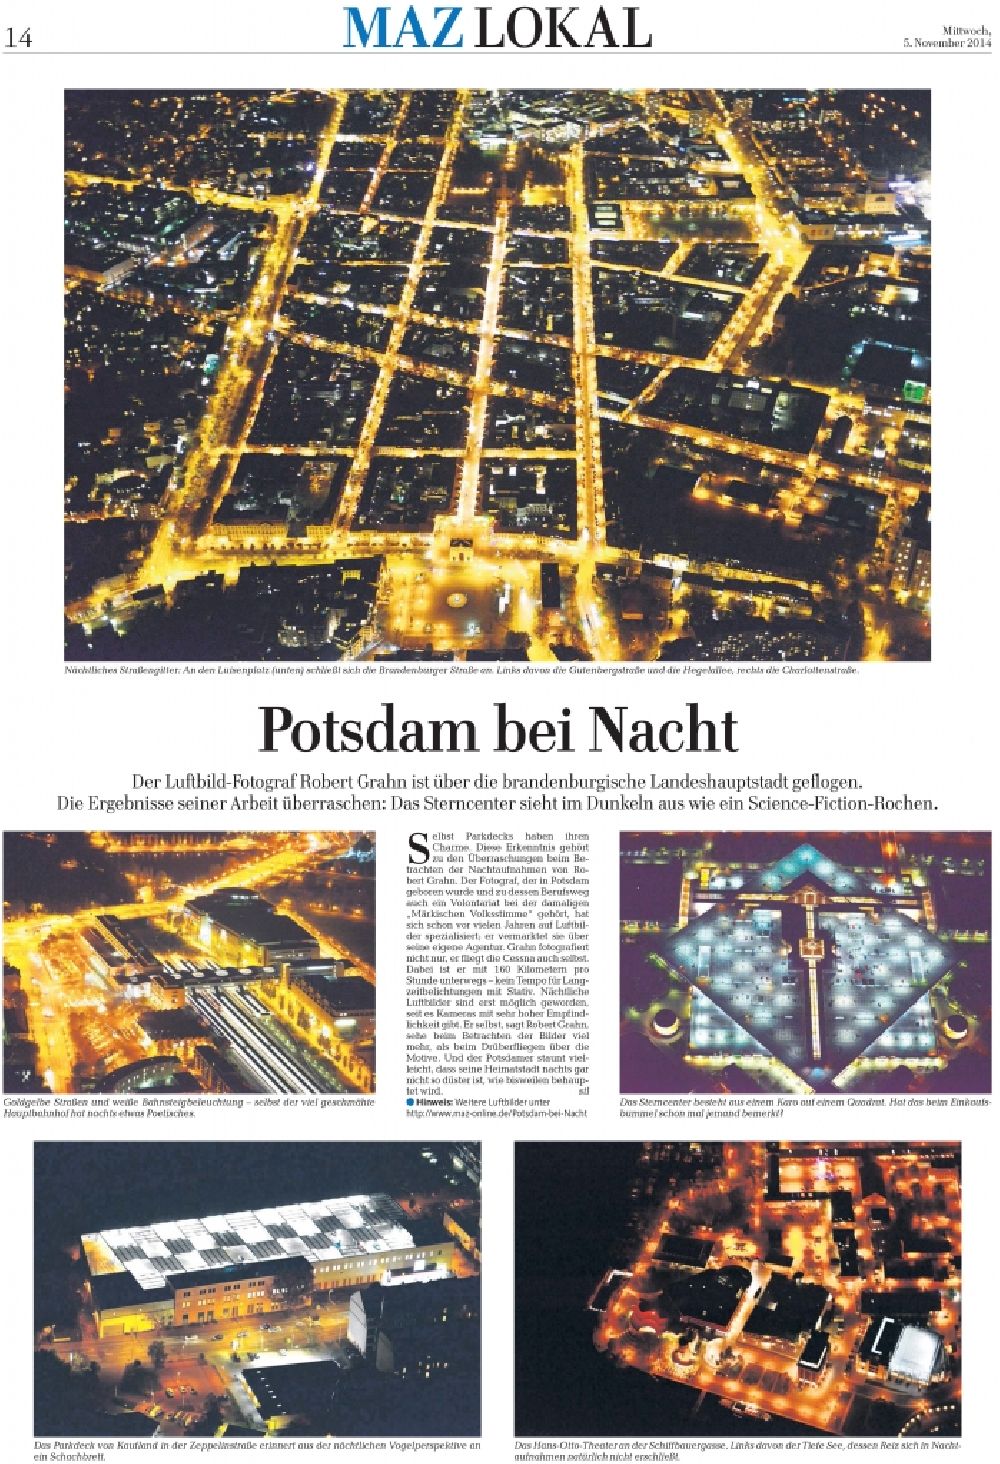 Nacht-Luftaufnahme Potsdam - Belegausschnitt / Medienverwendung / Luftbildverwendung Luftbild Potsdam bei Nacht in der Zeitung MAZ MÄRKISCHE ALLGEMEINE am 05.11.2014 Seite 14